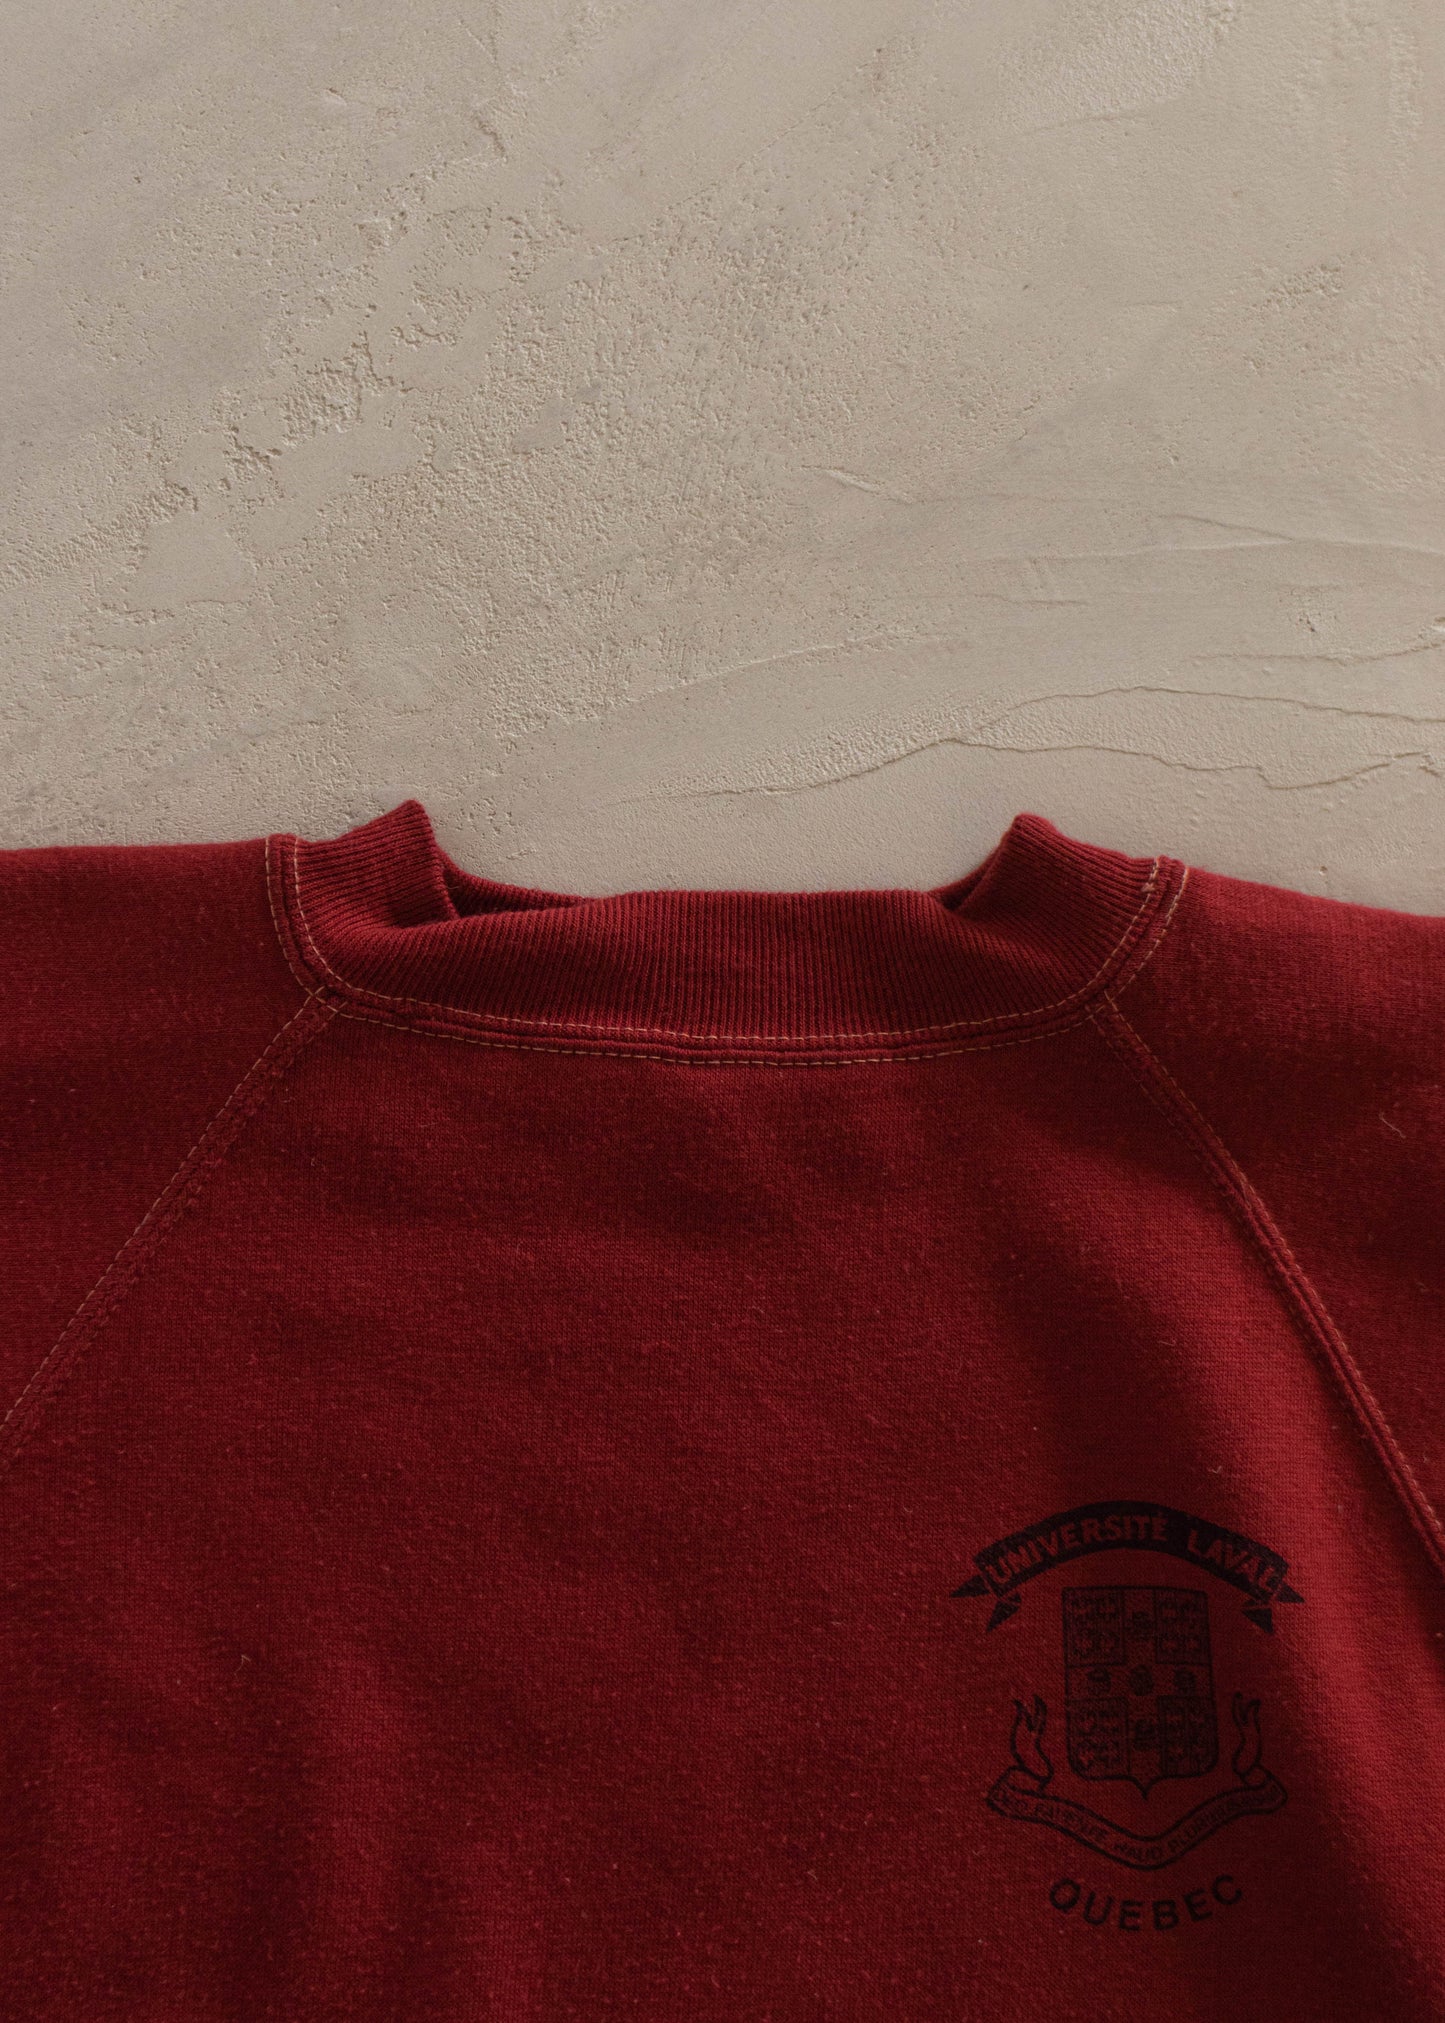 1970s Scrambler University of Laval Souvenir Raglan Sweatshirt Size 2XS/XS